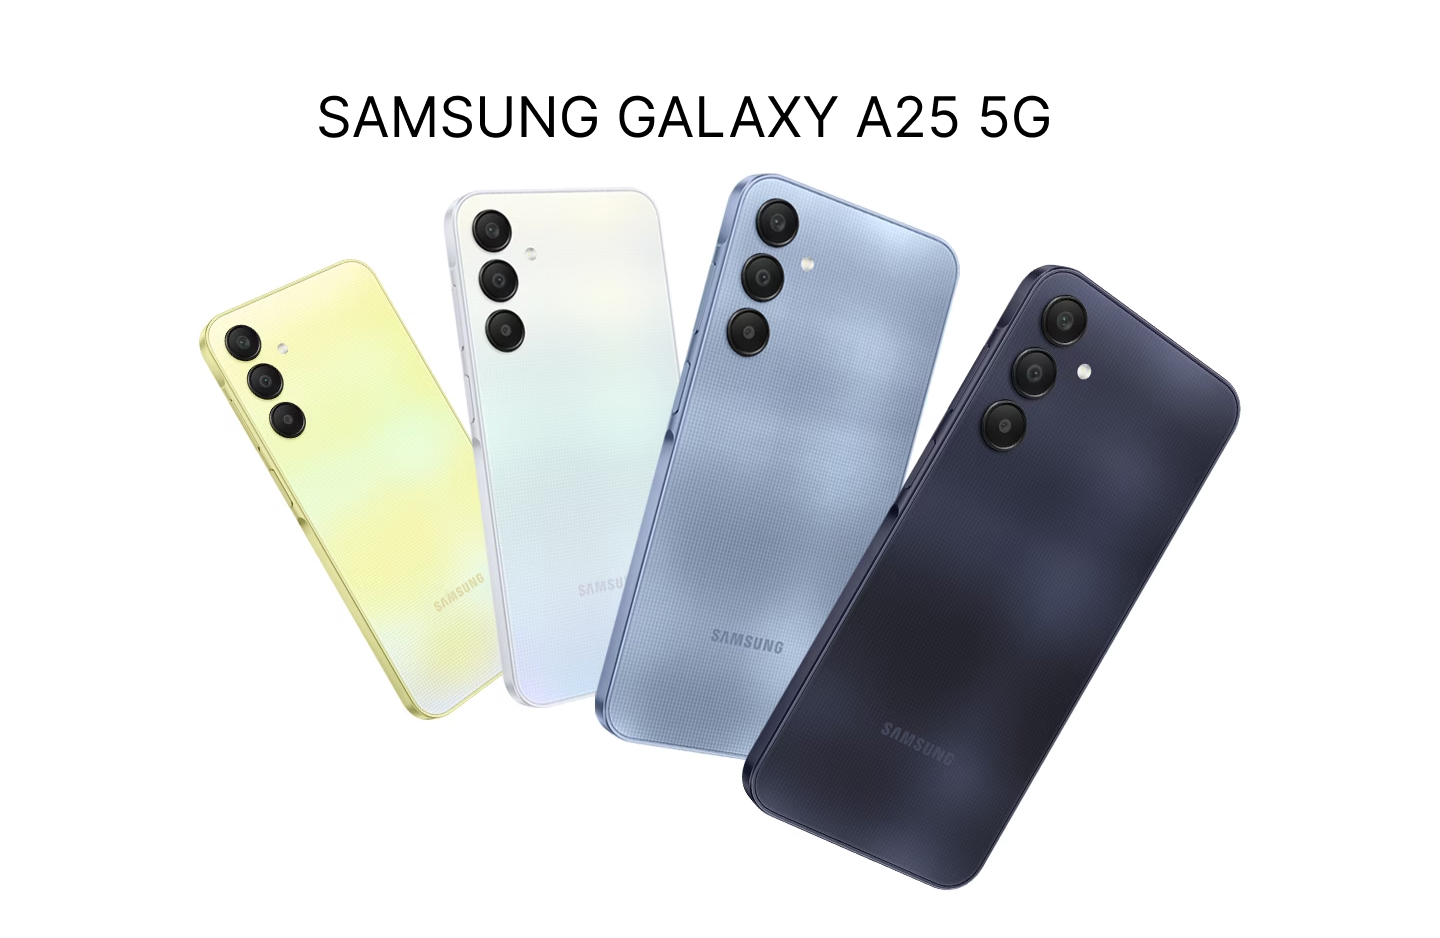 Samsung Galaxy A25 5G: A solid mid-range option